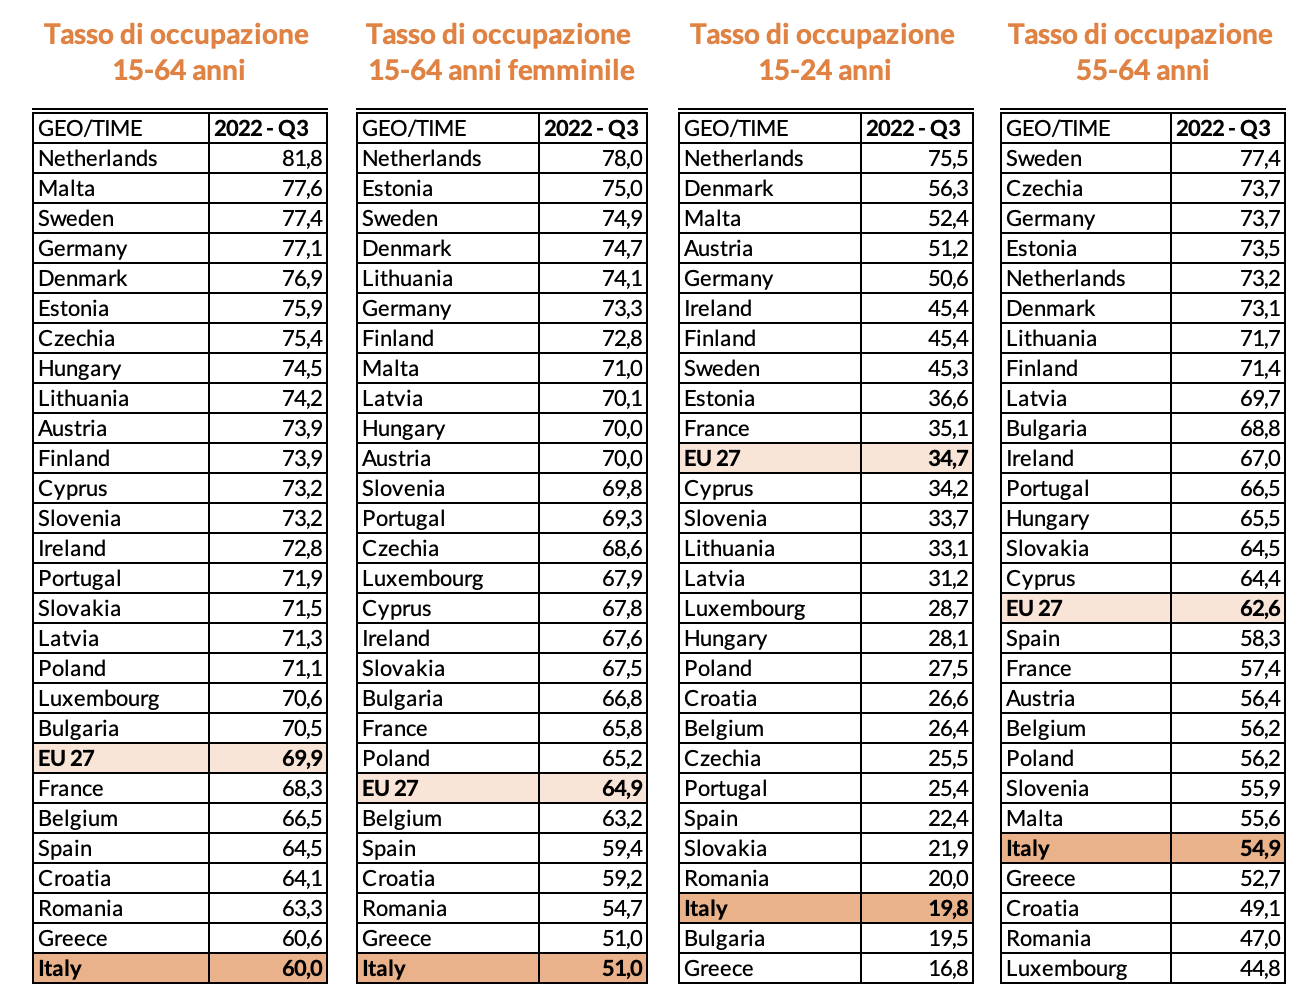 Tabella 1 –Tassi di occupazione a confronto: Italia vs Paesi UE, terzo trimestre 2022 (ultimo periodo di rilevazione disponibile)